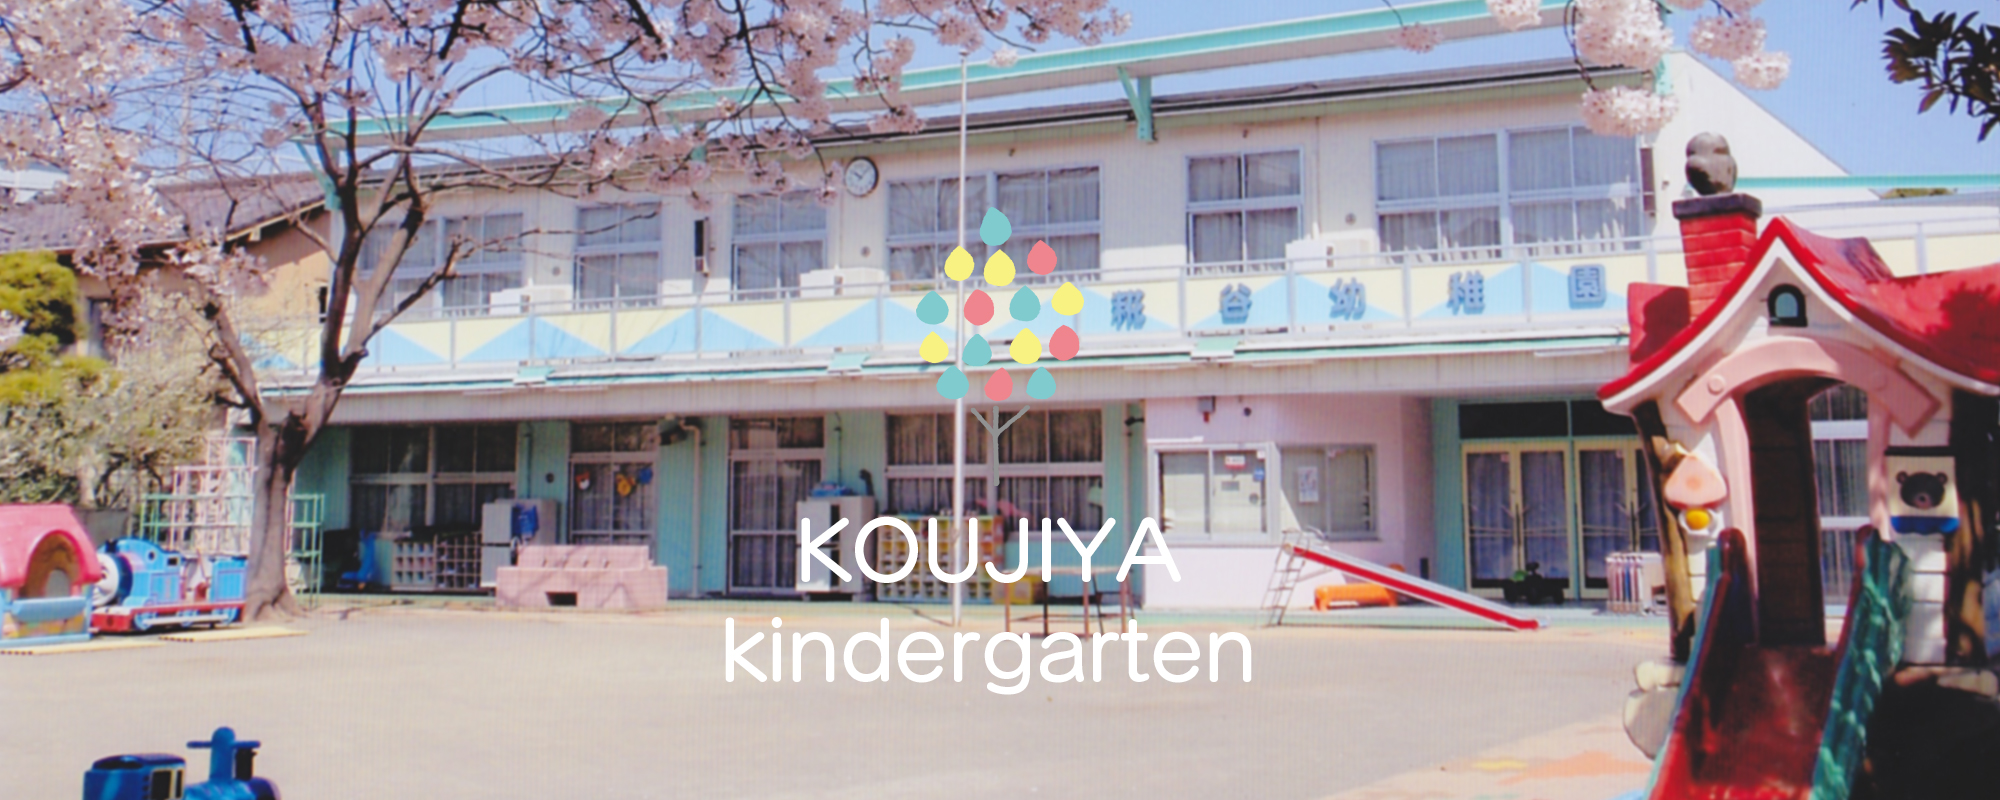 KOUJIYA kindergarten